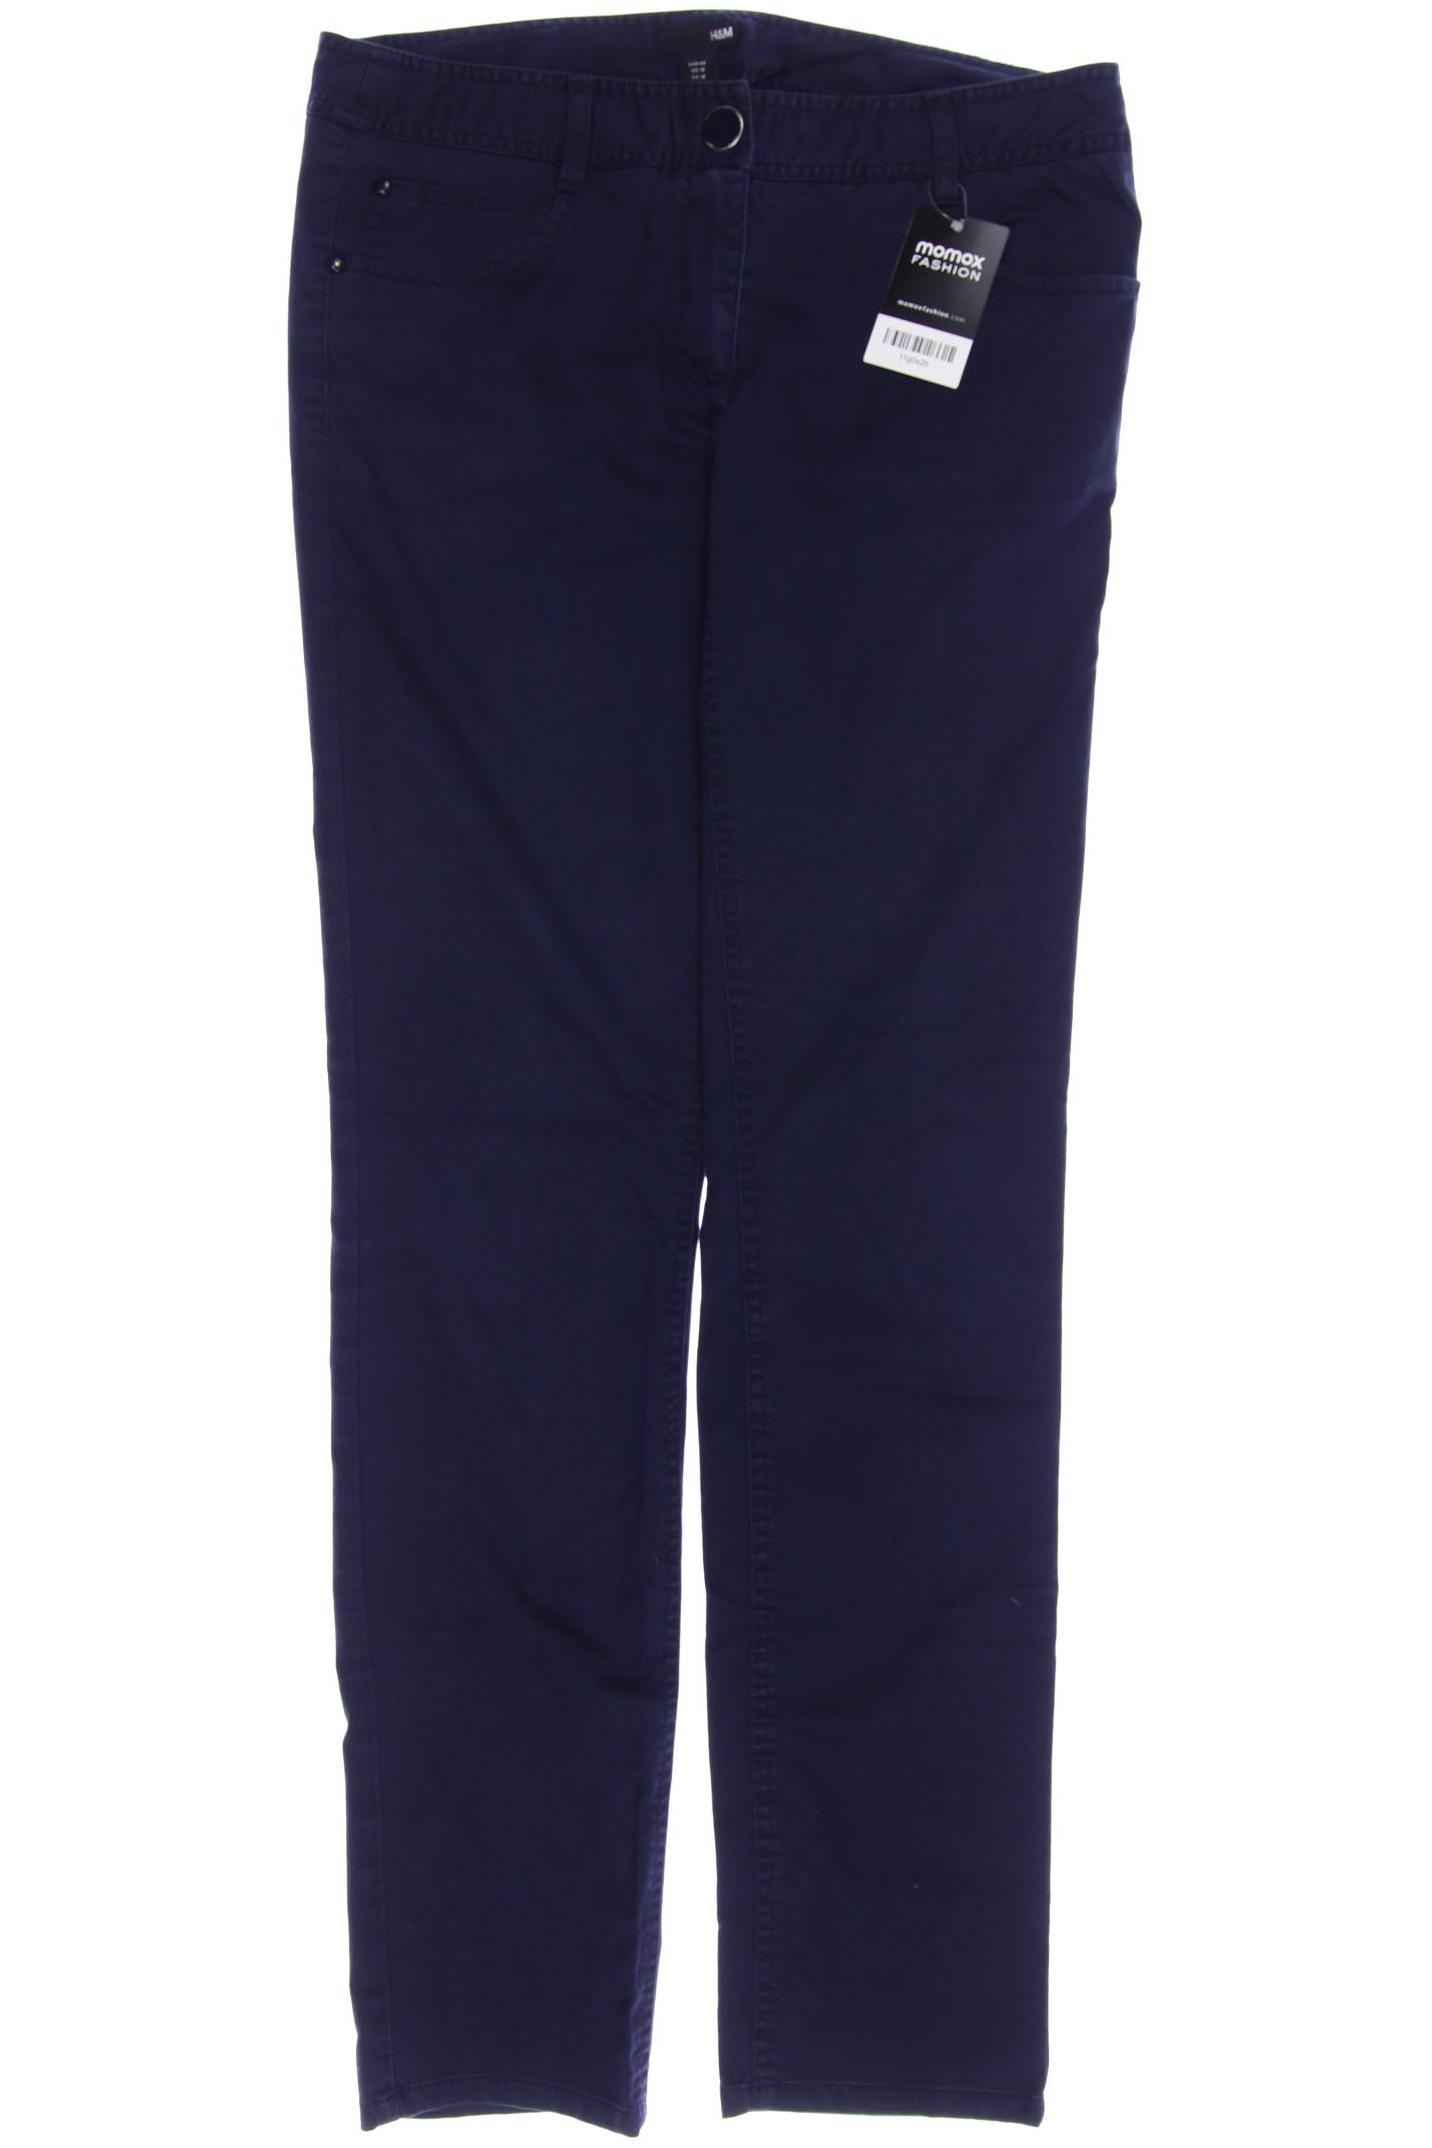 H&M Damen Jeans, marineblau, Gr. 42 von H&M